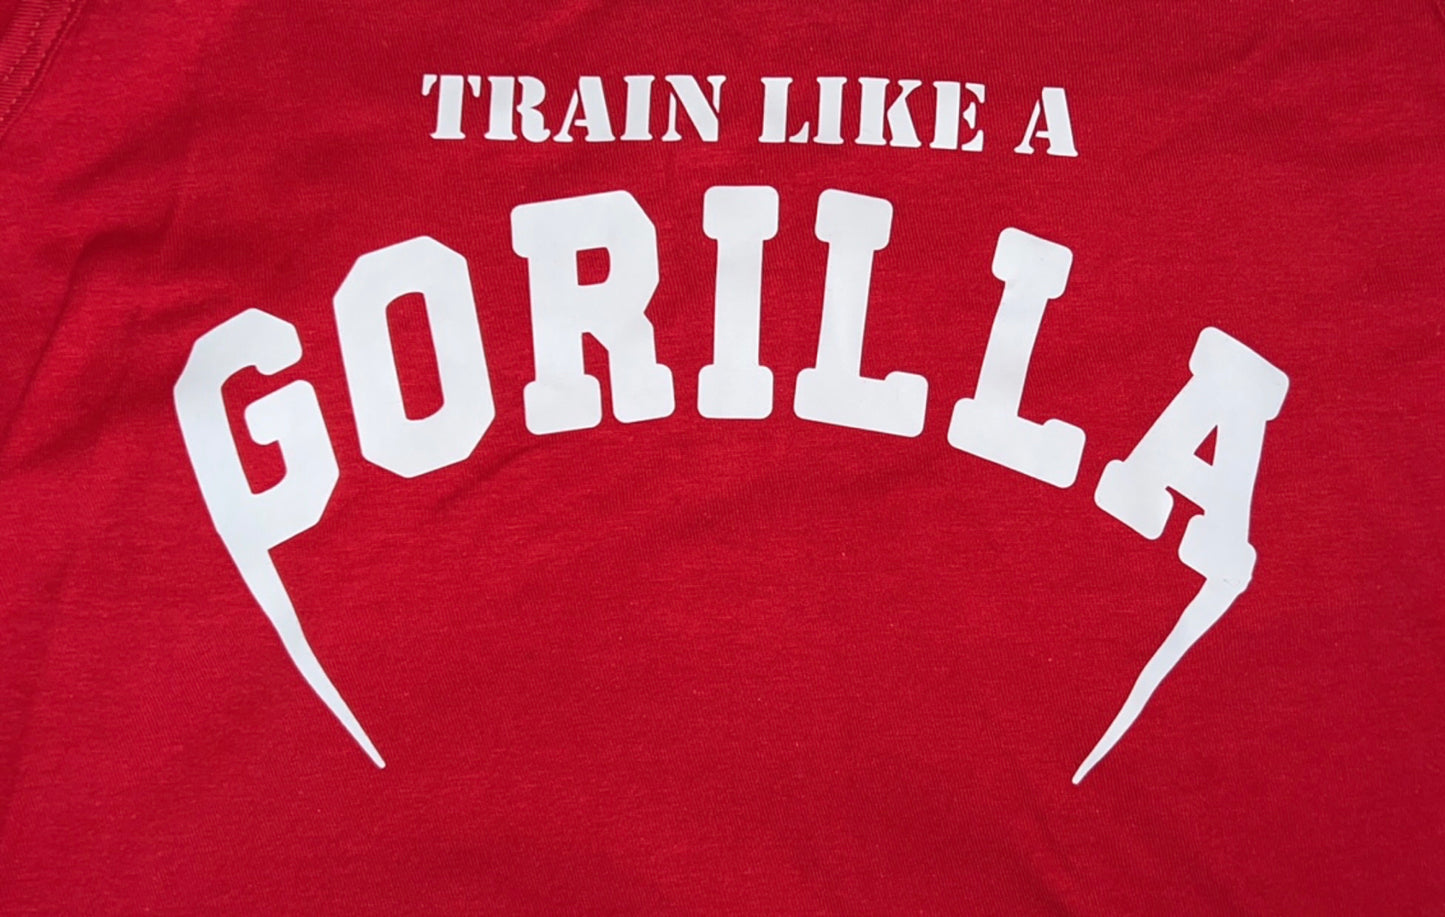 Train Like A Gorilla